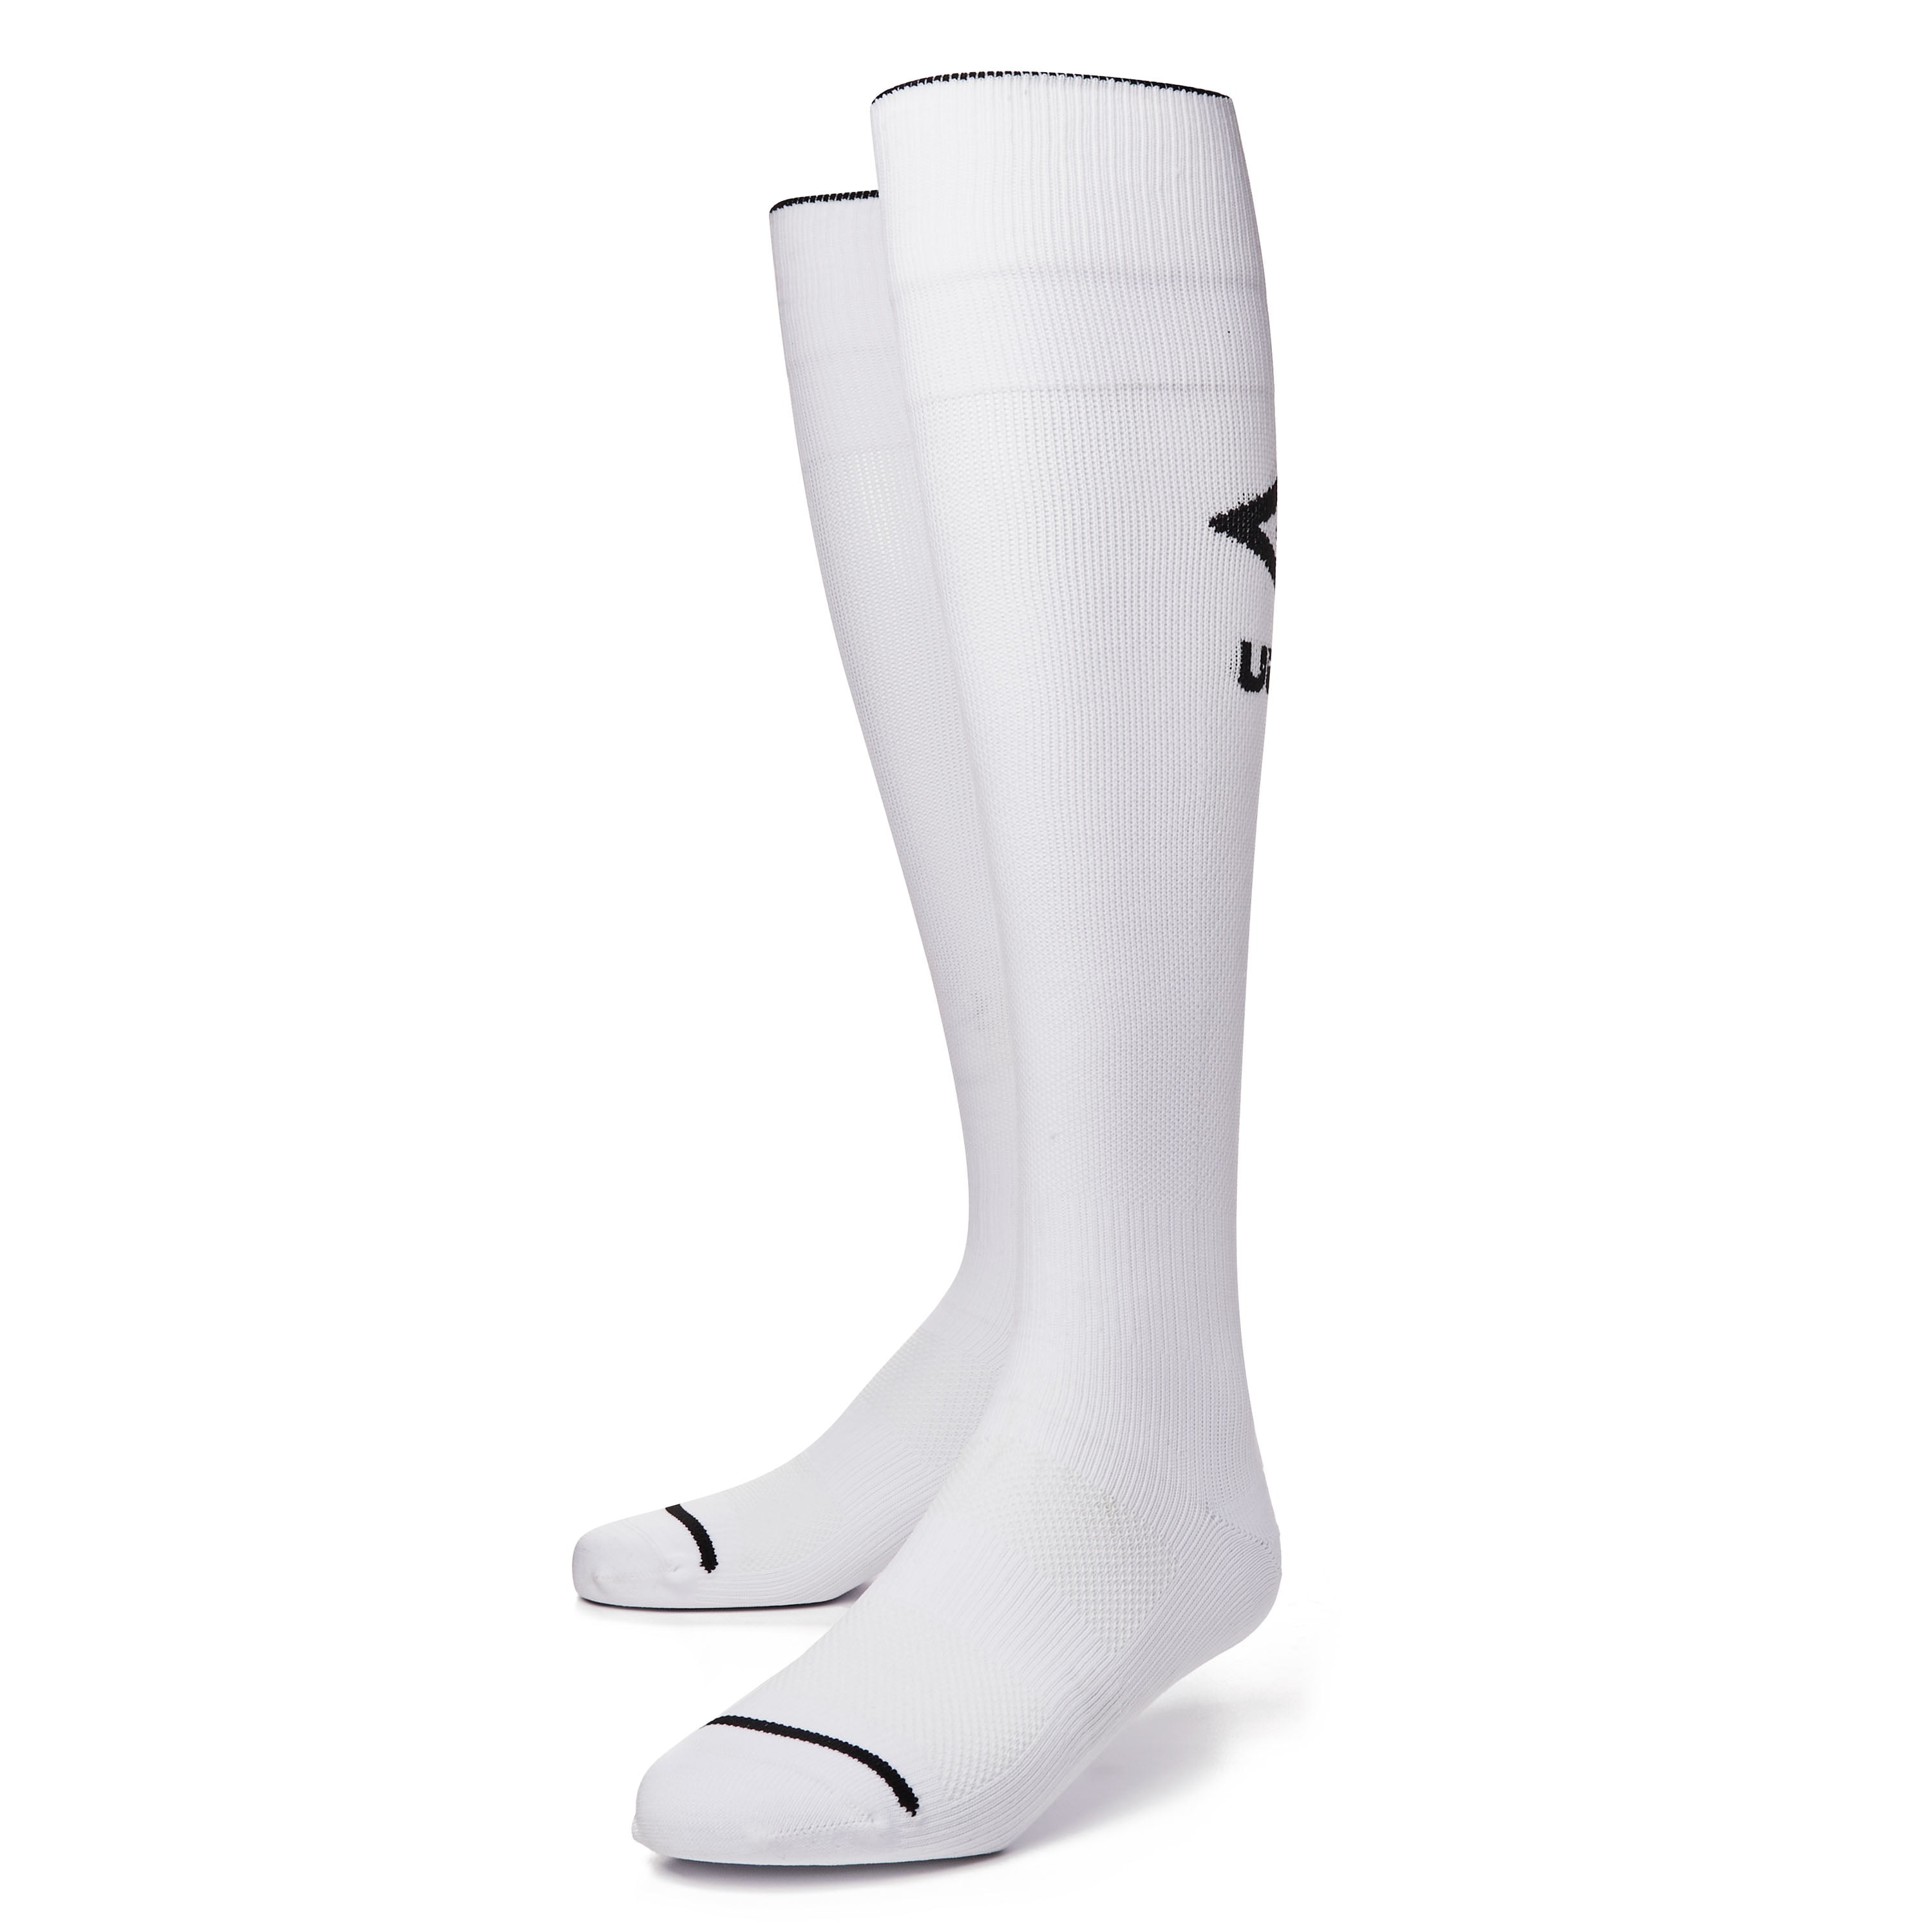 Umbro 2-pk Black Knee High Soccer Socks Youth Size 2 Foot 3.5-6 